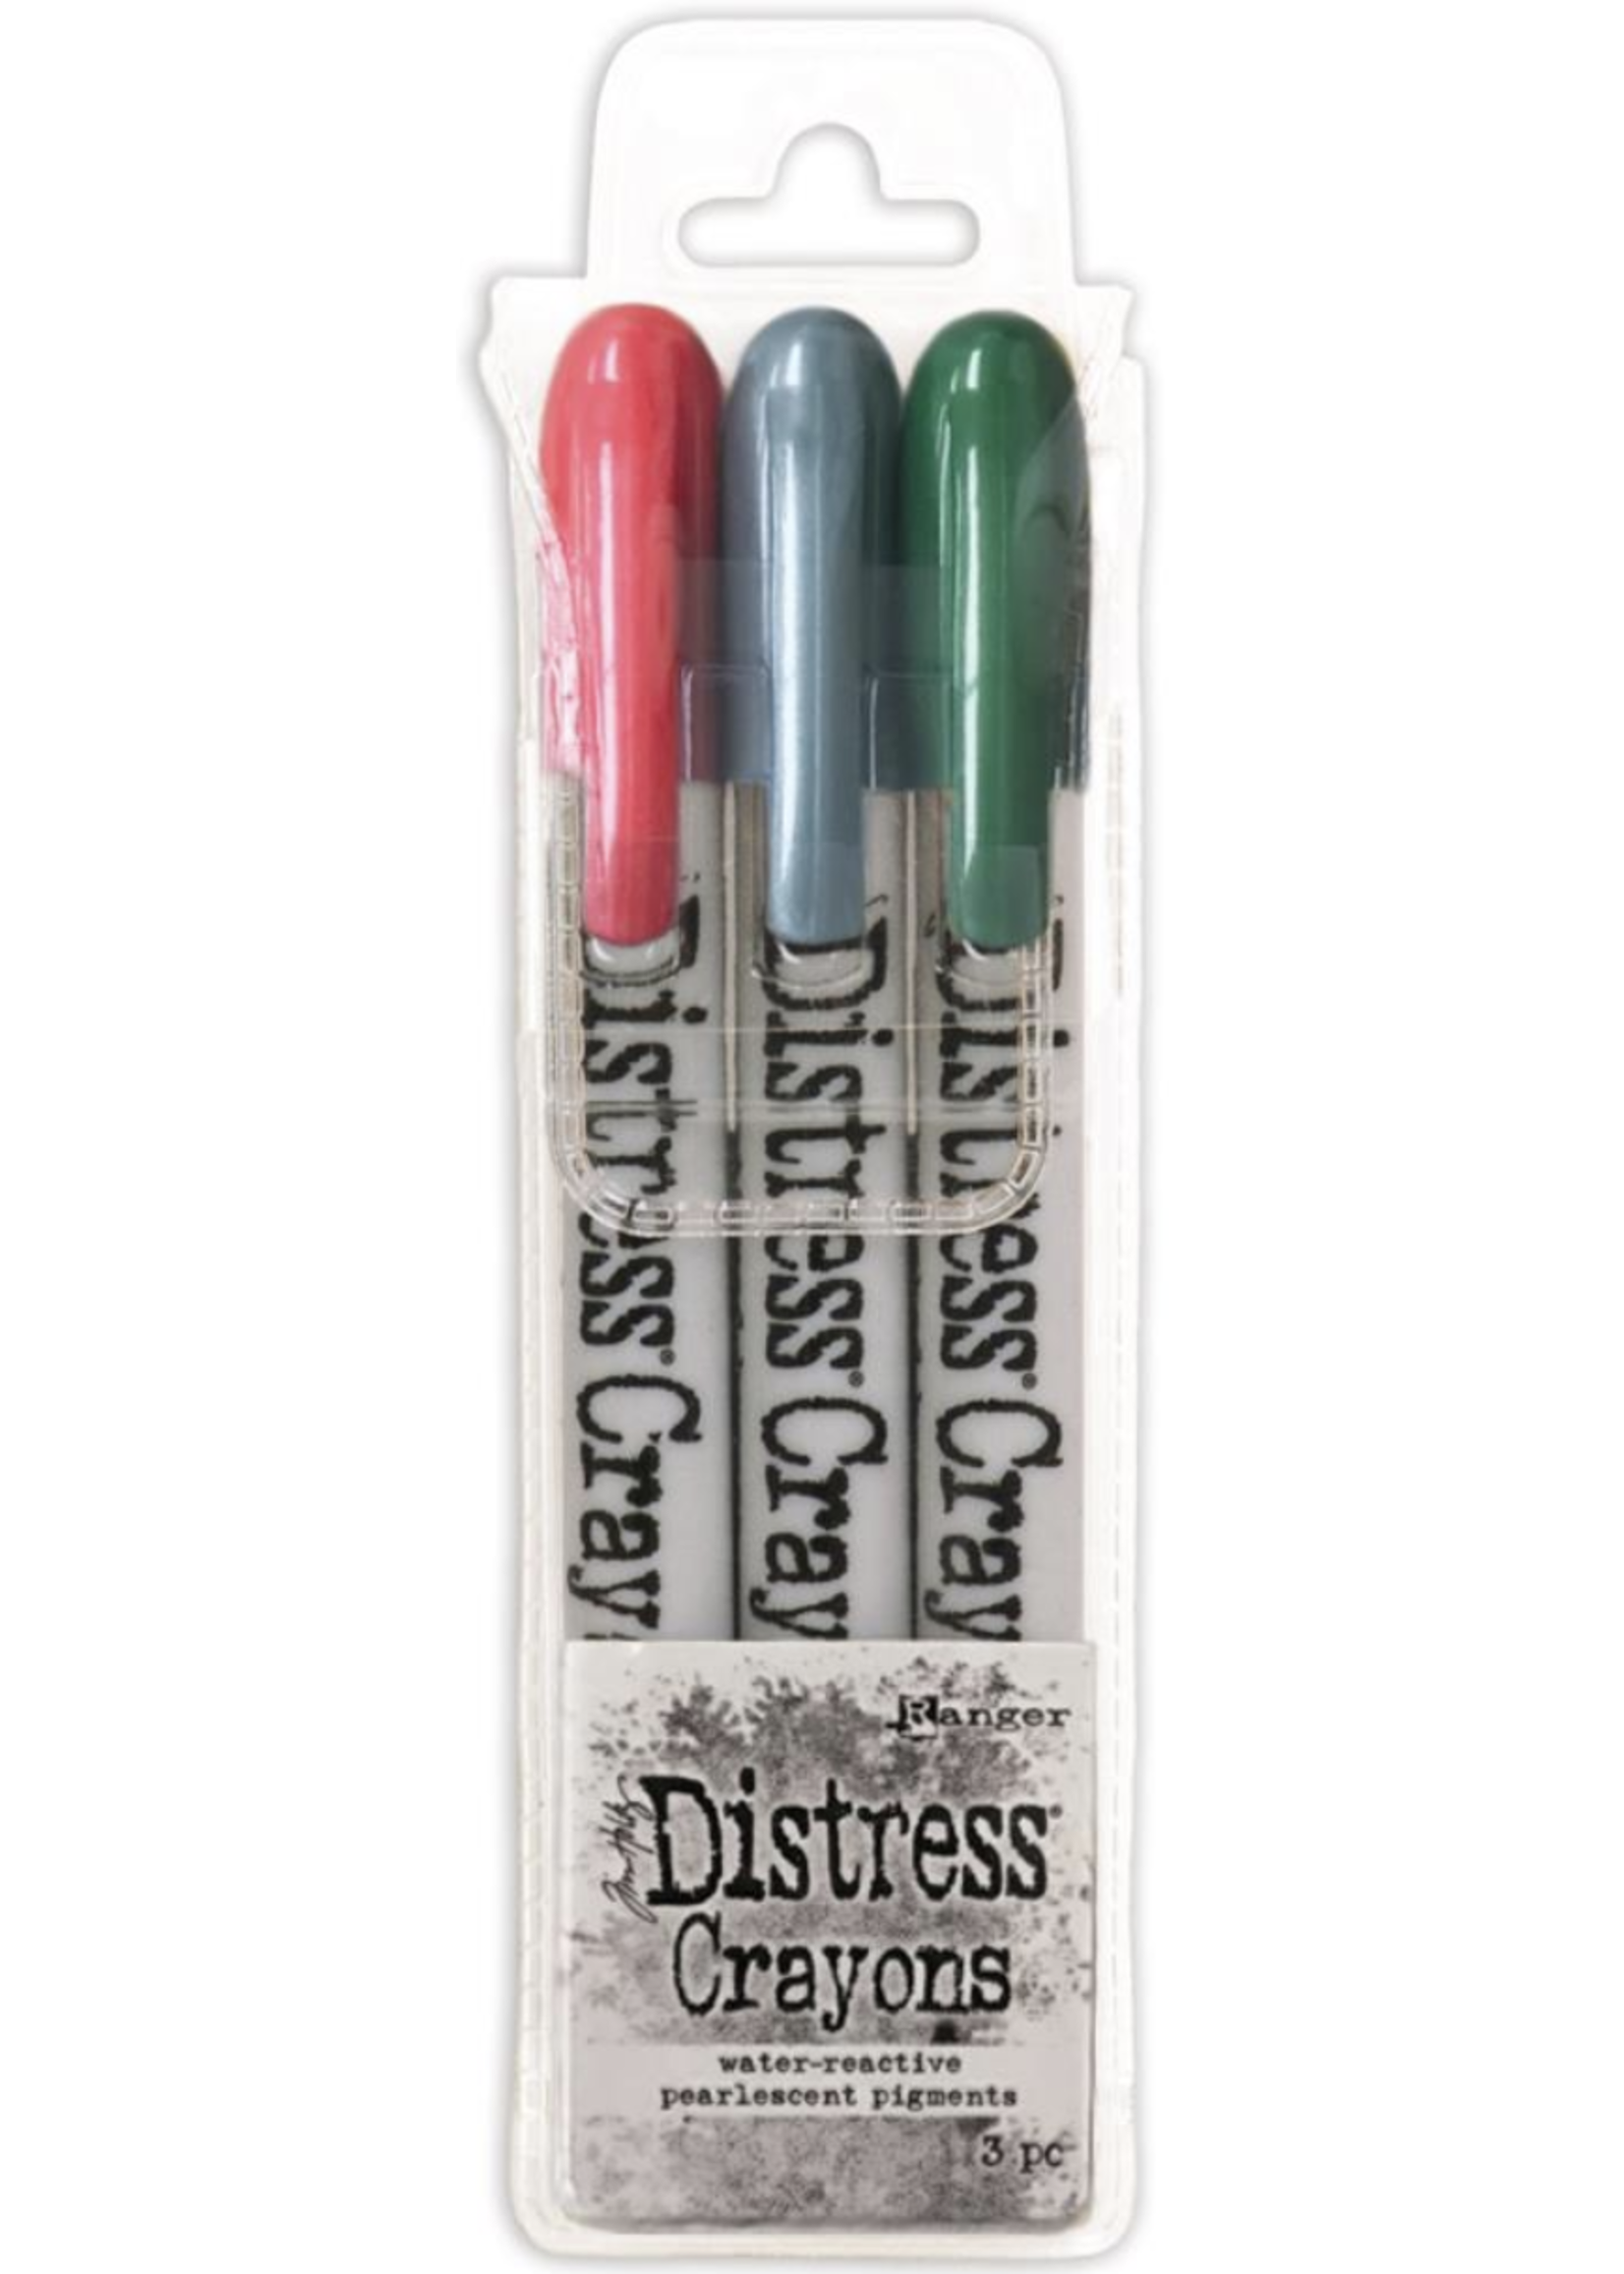 Gary Burlin Distress Crayons: Pearl Holiday Set 1 RBG